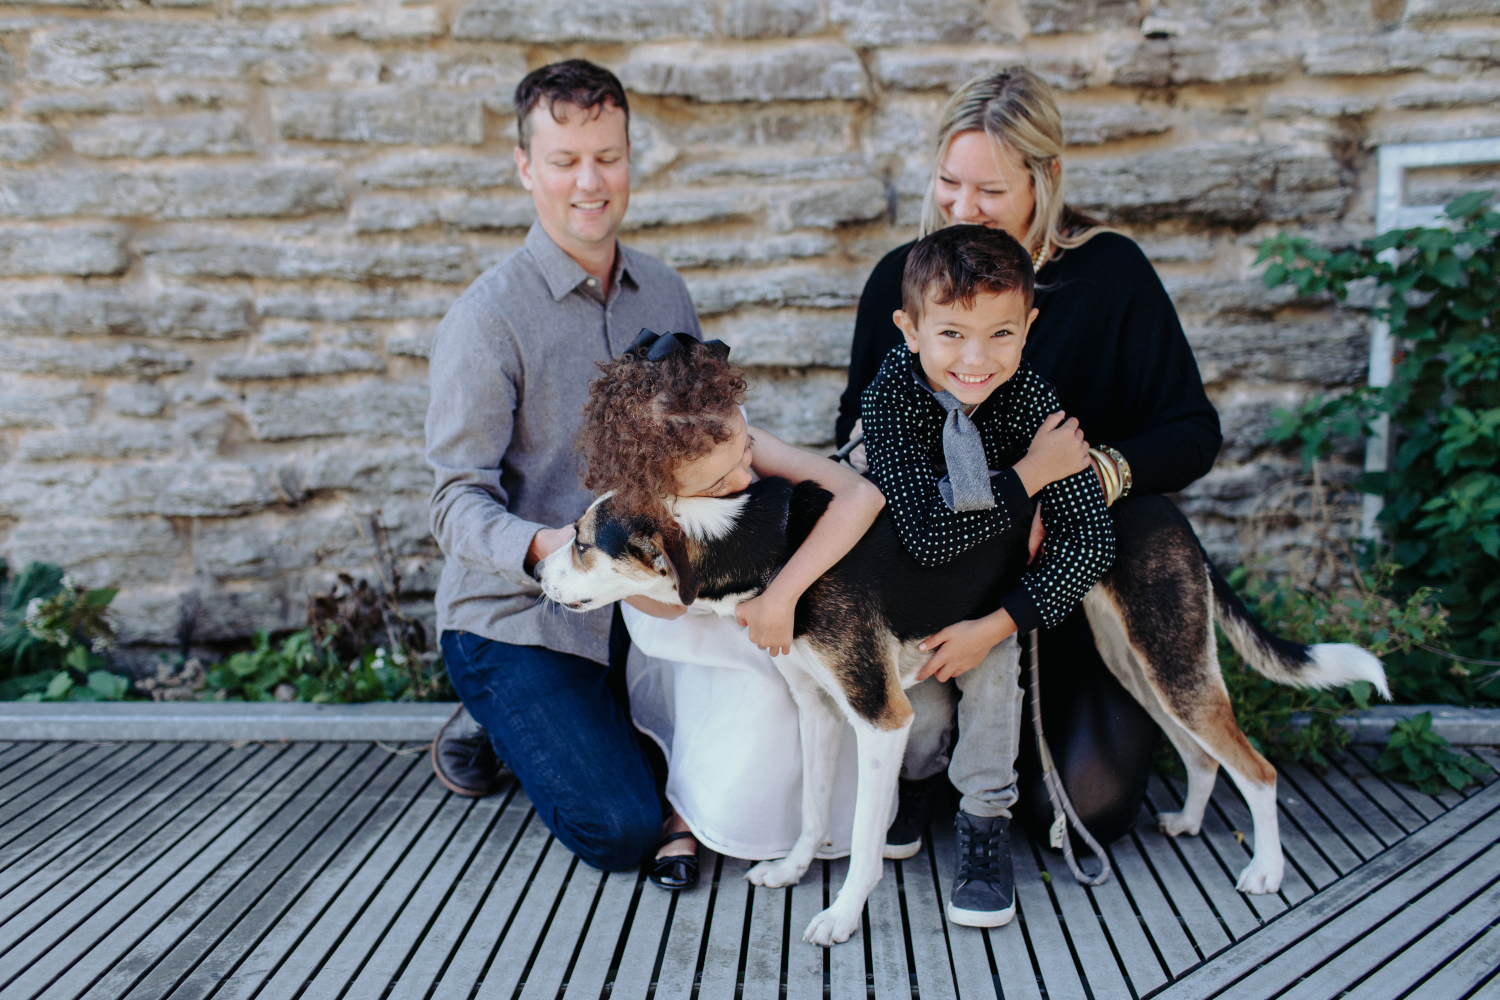 The Berkland family embracing their dog